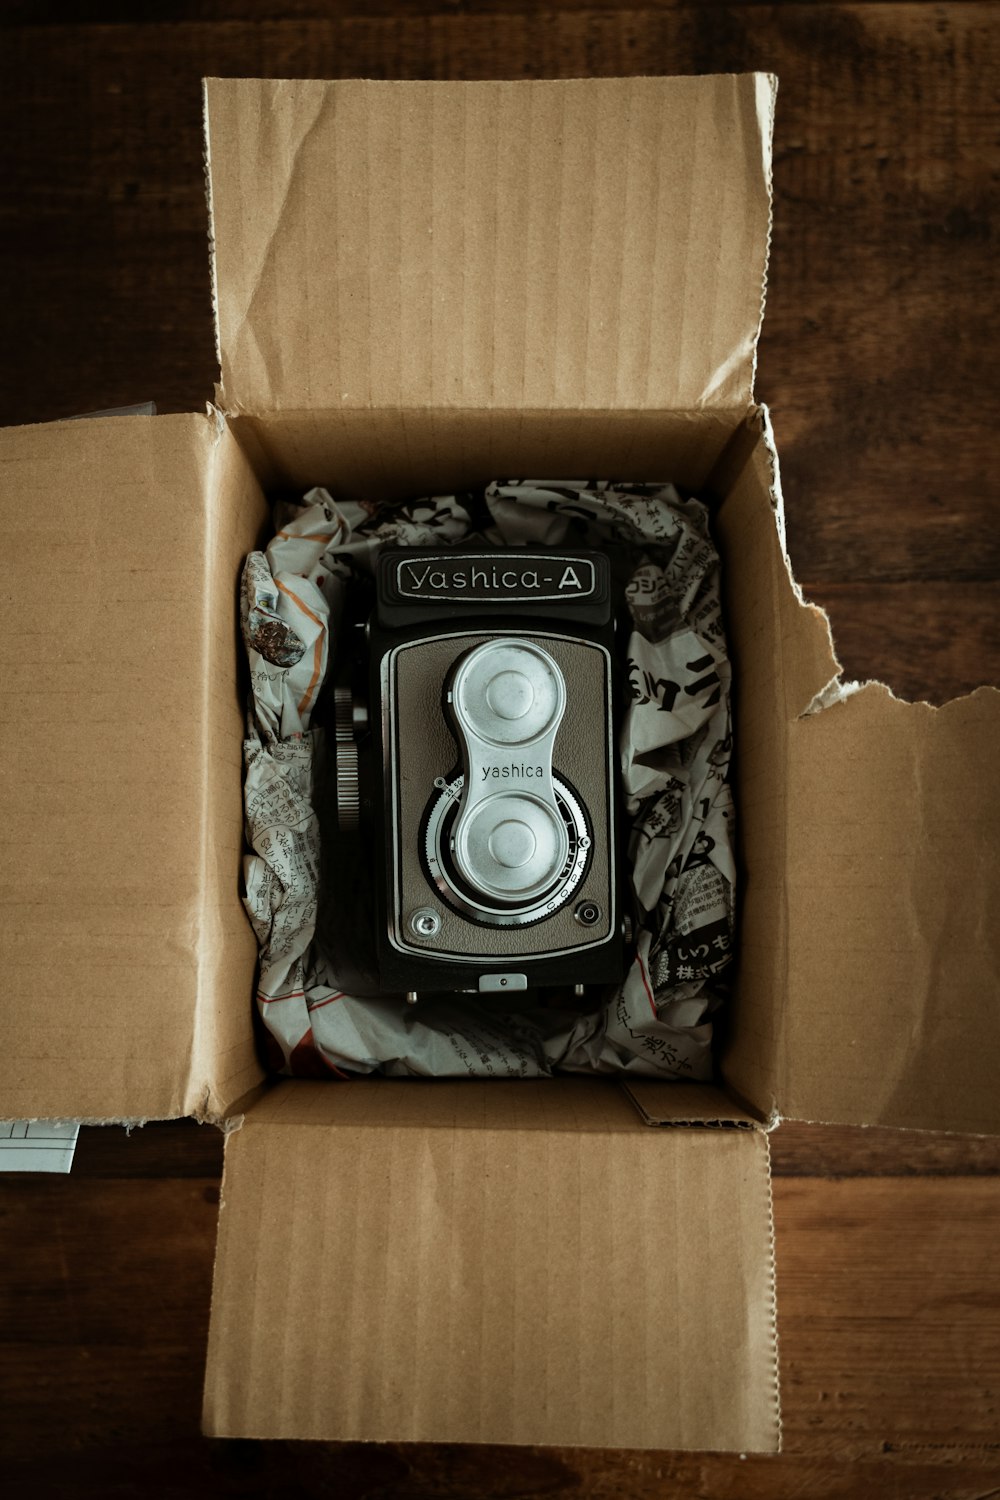 Schwarz-Silber-Kamera auf braunem Karton